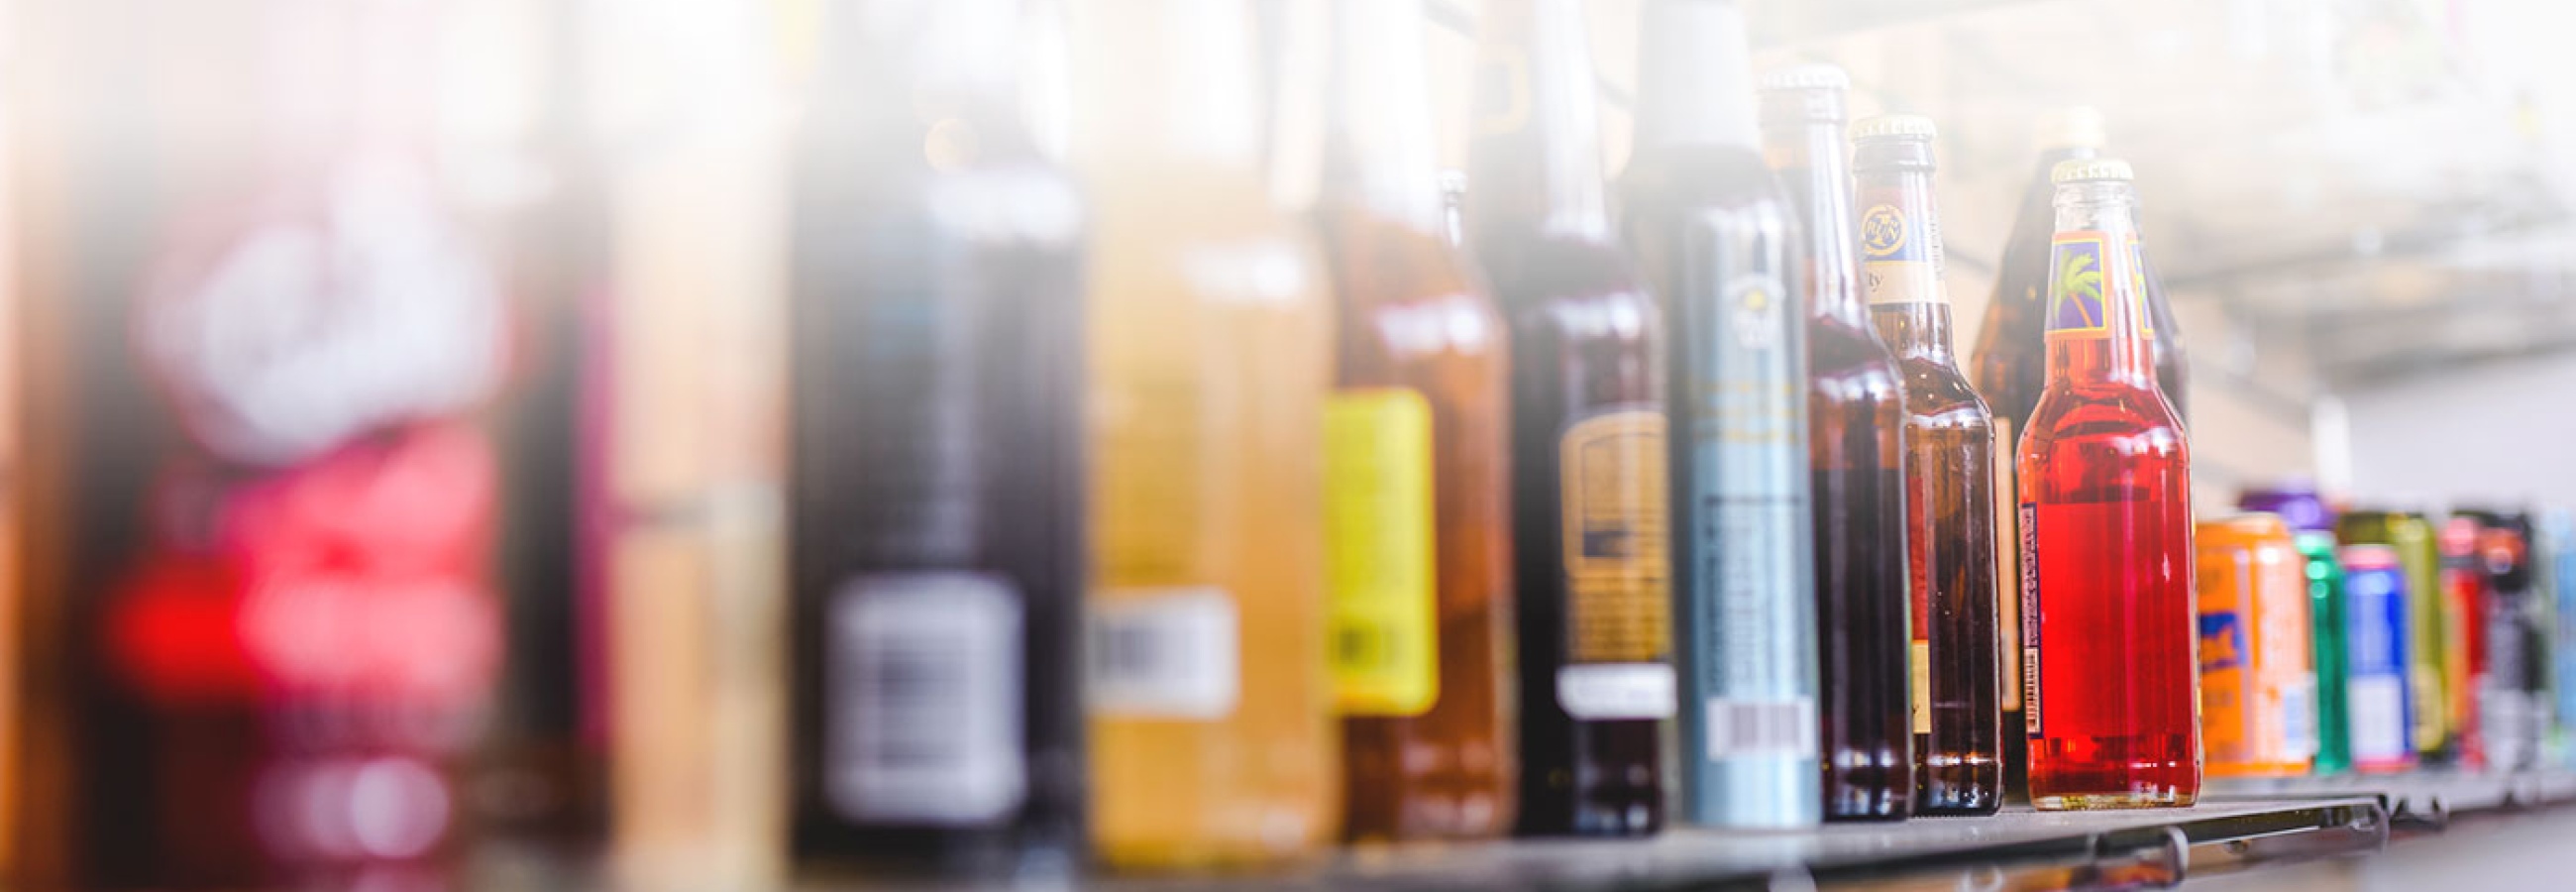 Bottles on Shelf - Beverage Formulation and Development